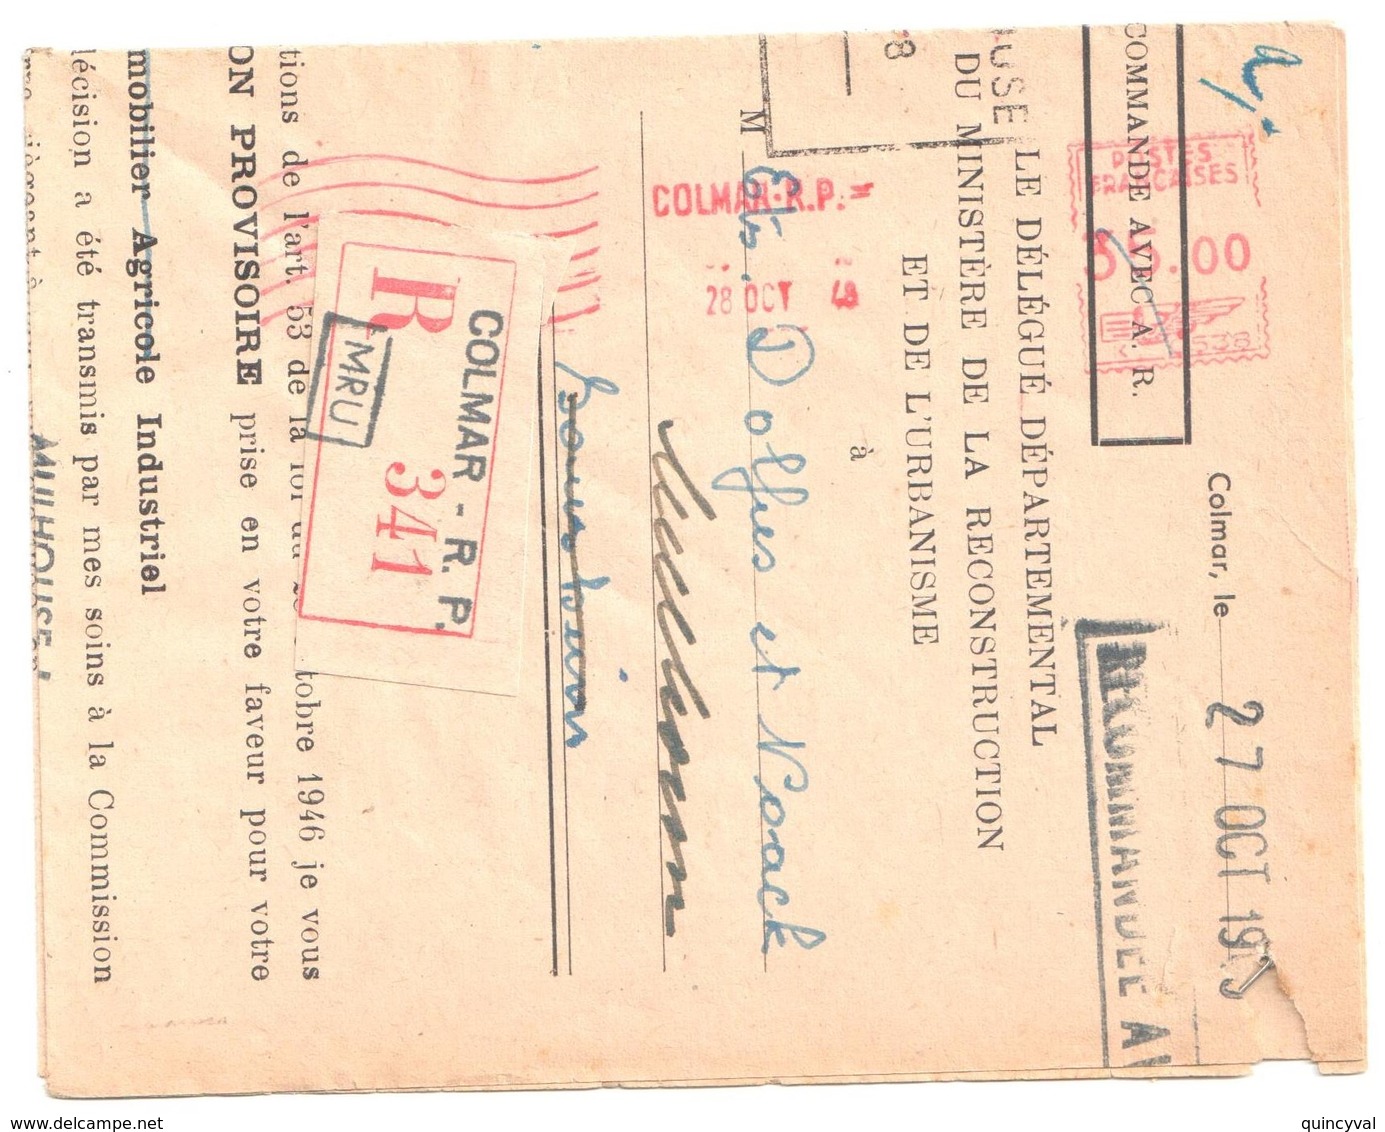 COLMAR RP Lettre Recommandée 28 10 1948 EMA Postes Françaises K Dest Sausheimb Ob Hexa Pointillé - EMA ( Maquina De Huellas A Franquear)